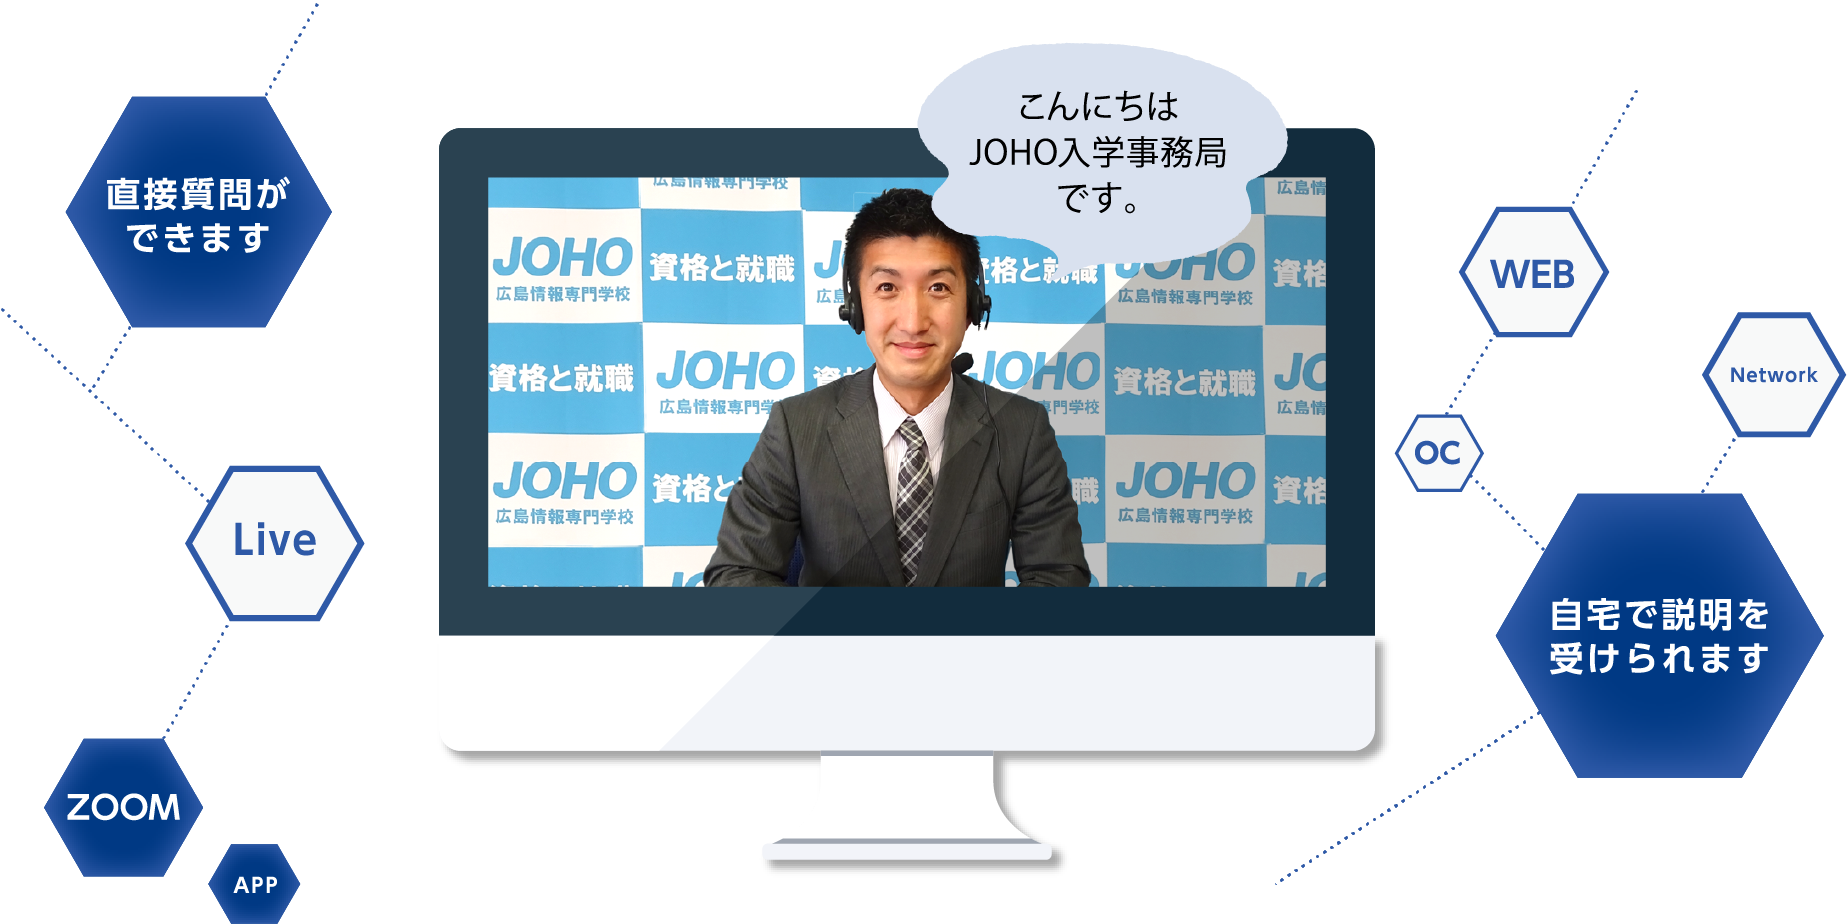 こんにちはJOHO入学事務局です。